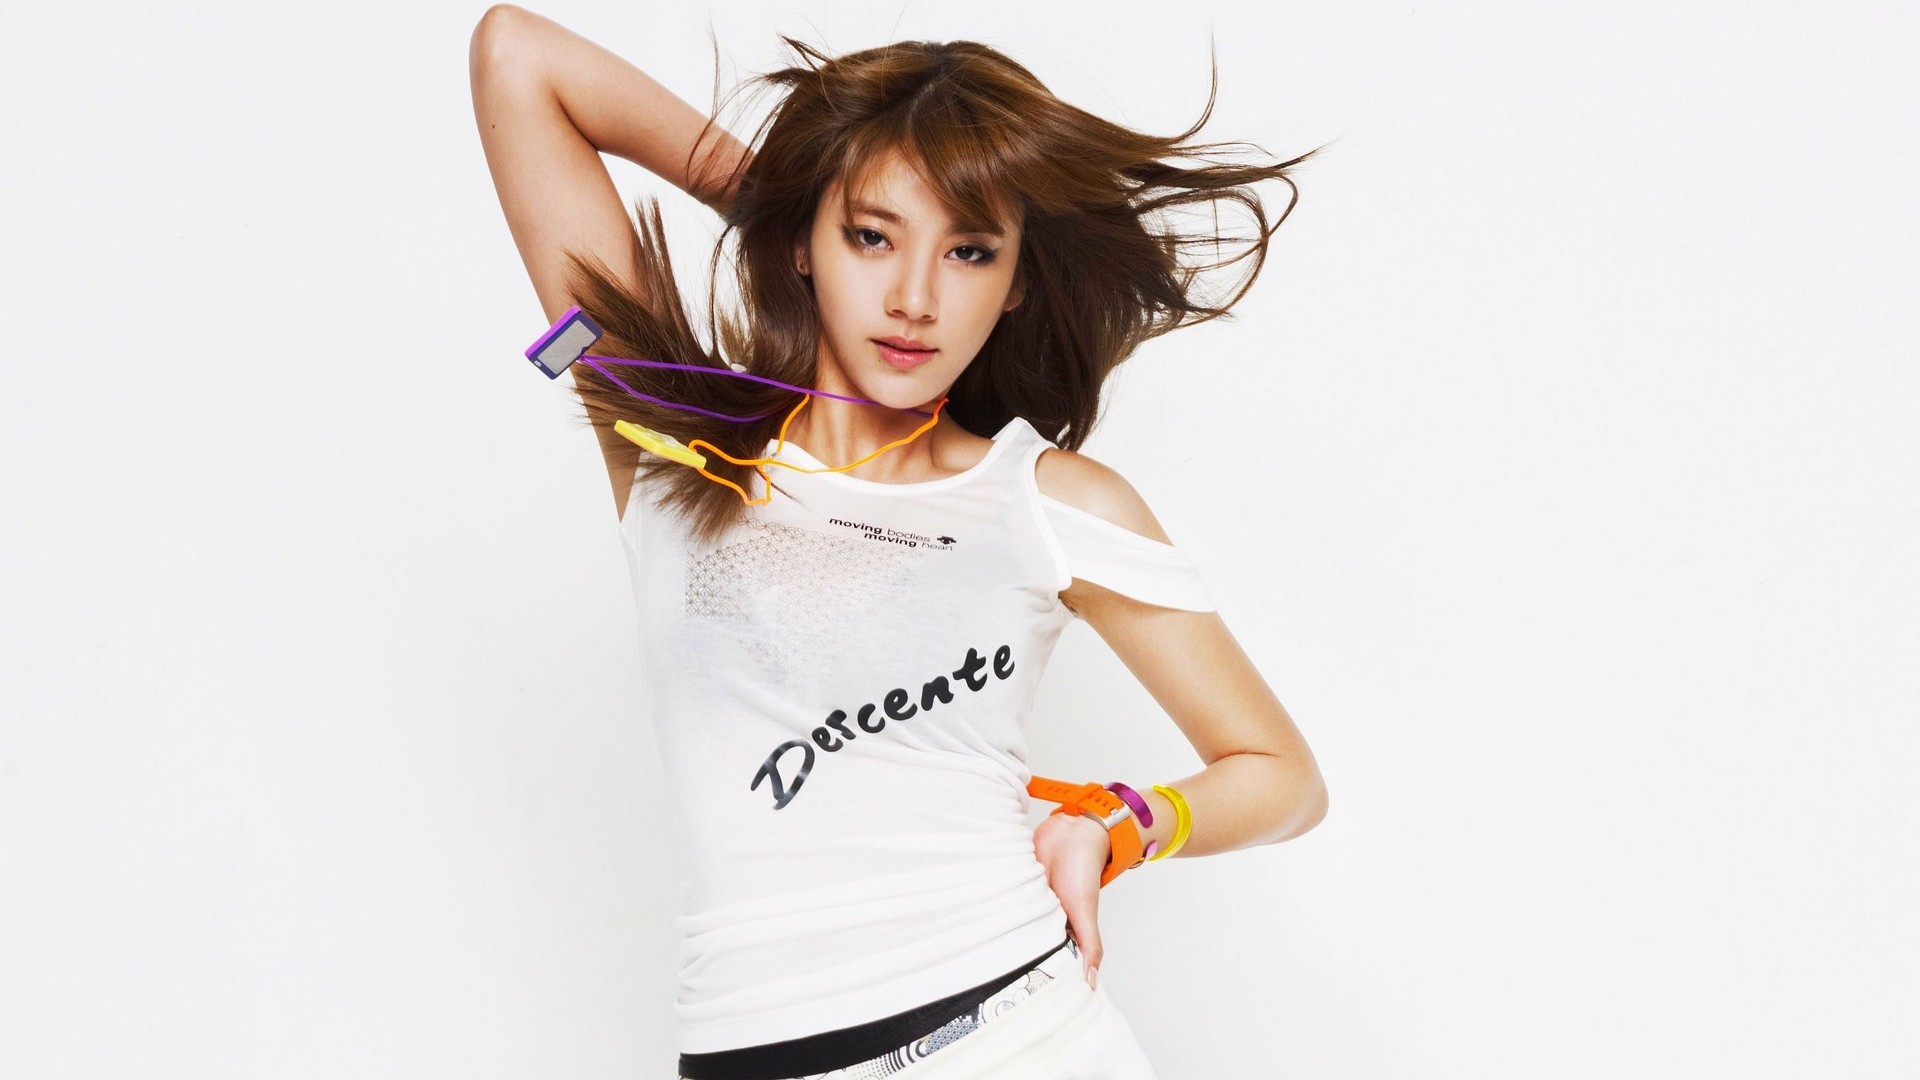 Son Dambi Korean Actress Wallpaper For Desktop & Mobile